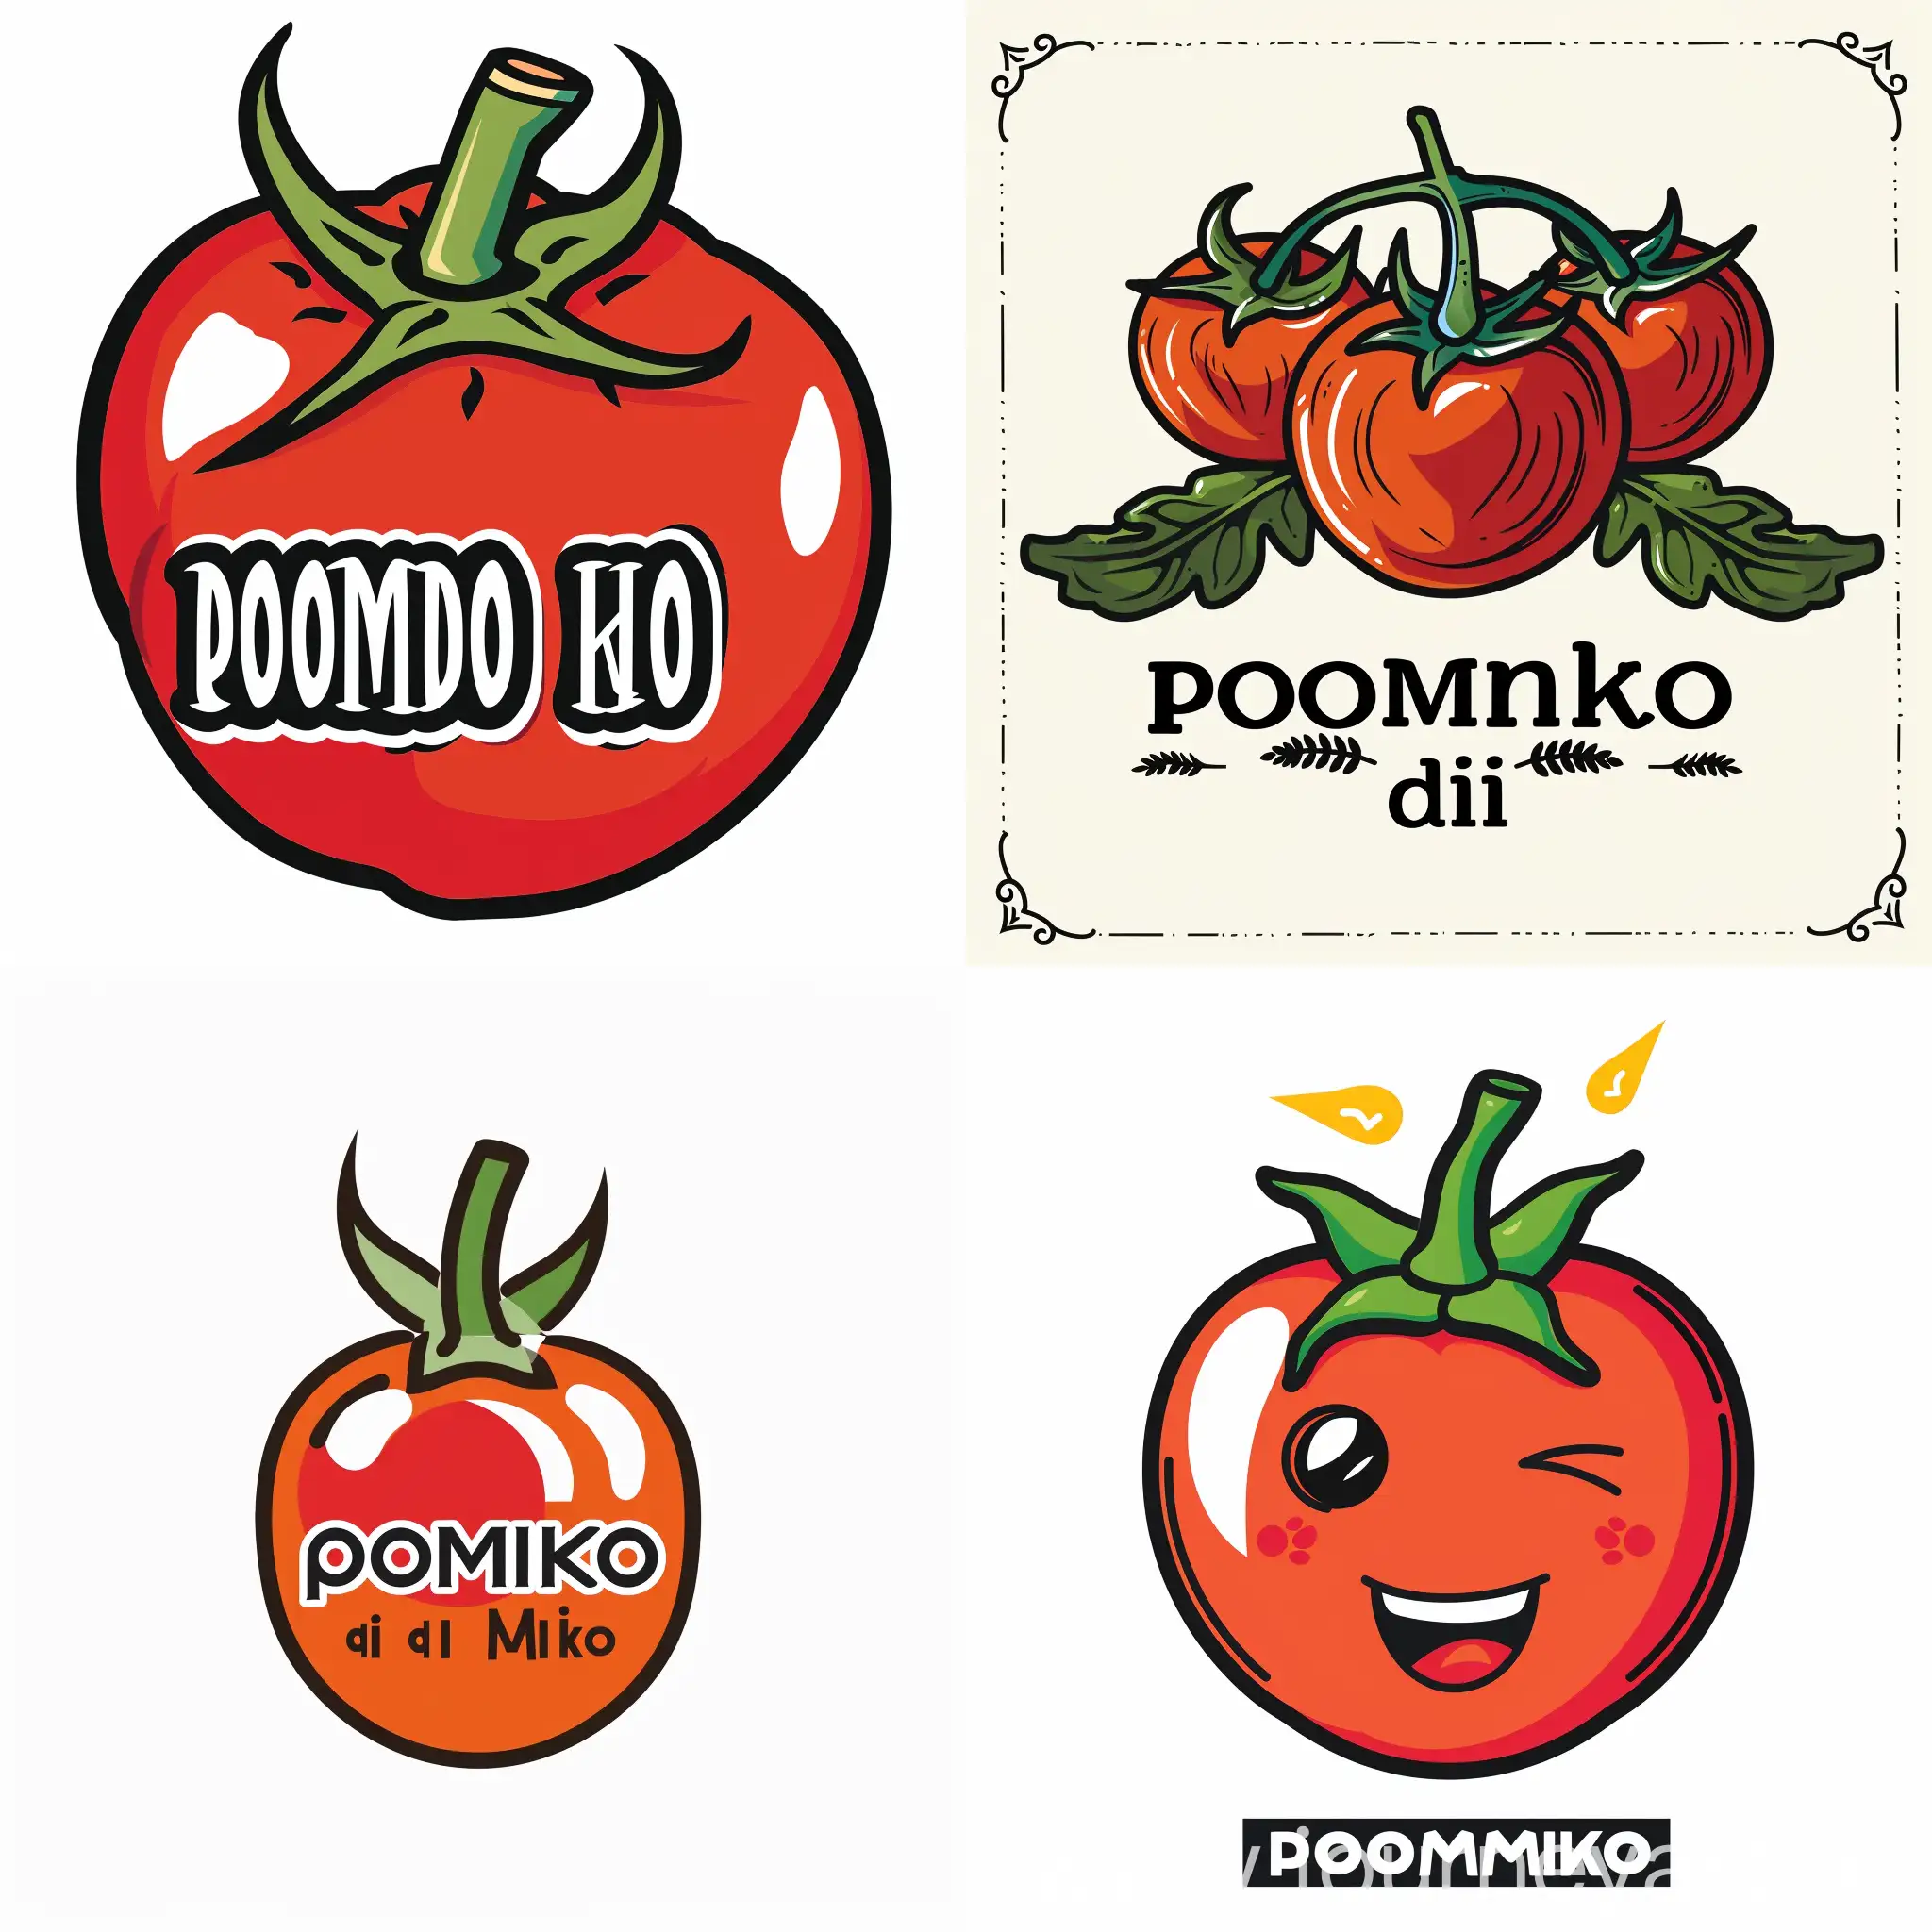 Logo for Pomodoro di Miko